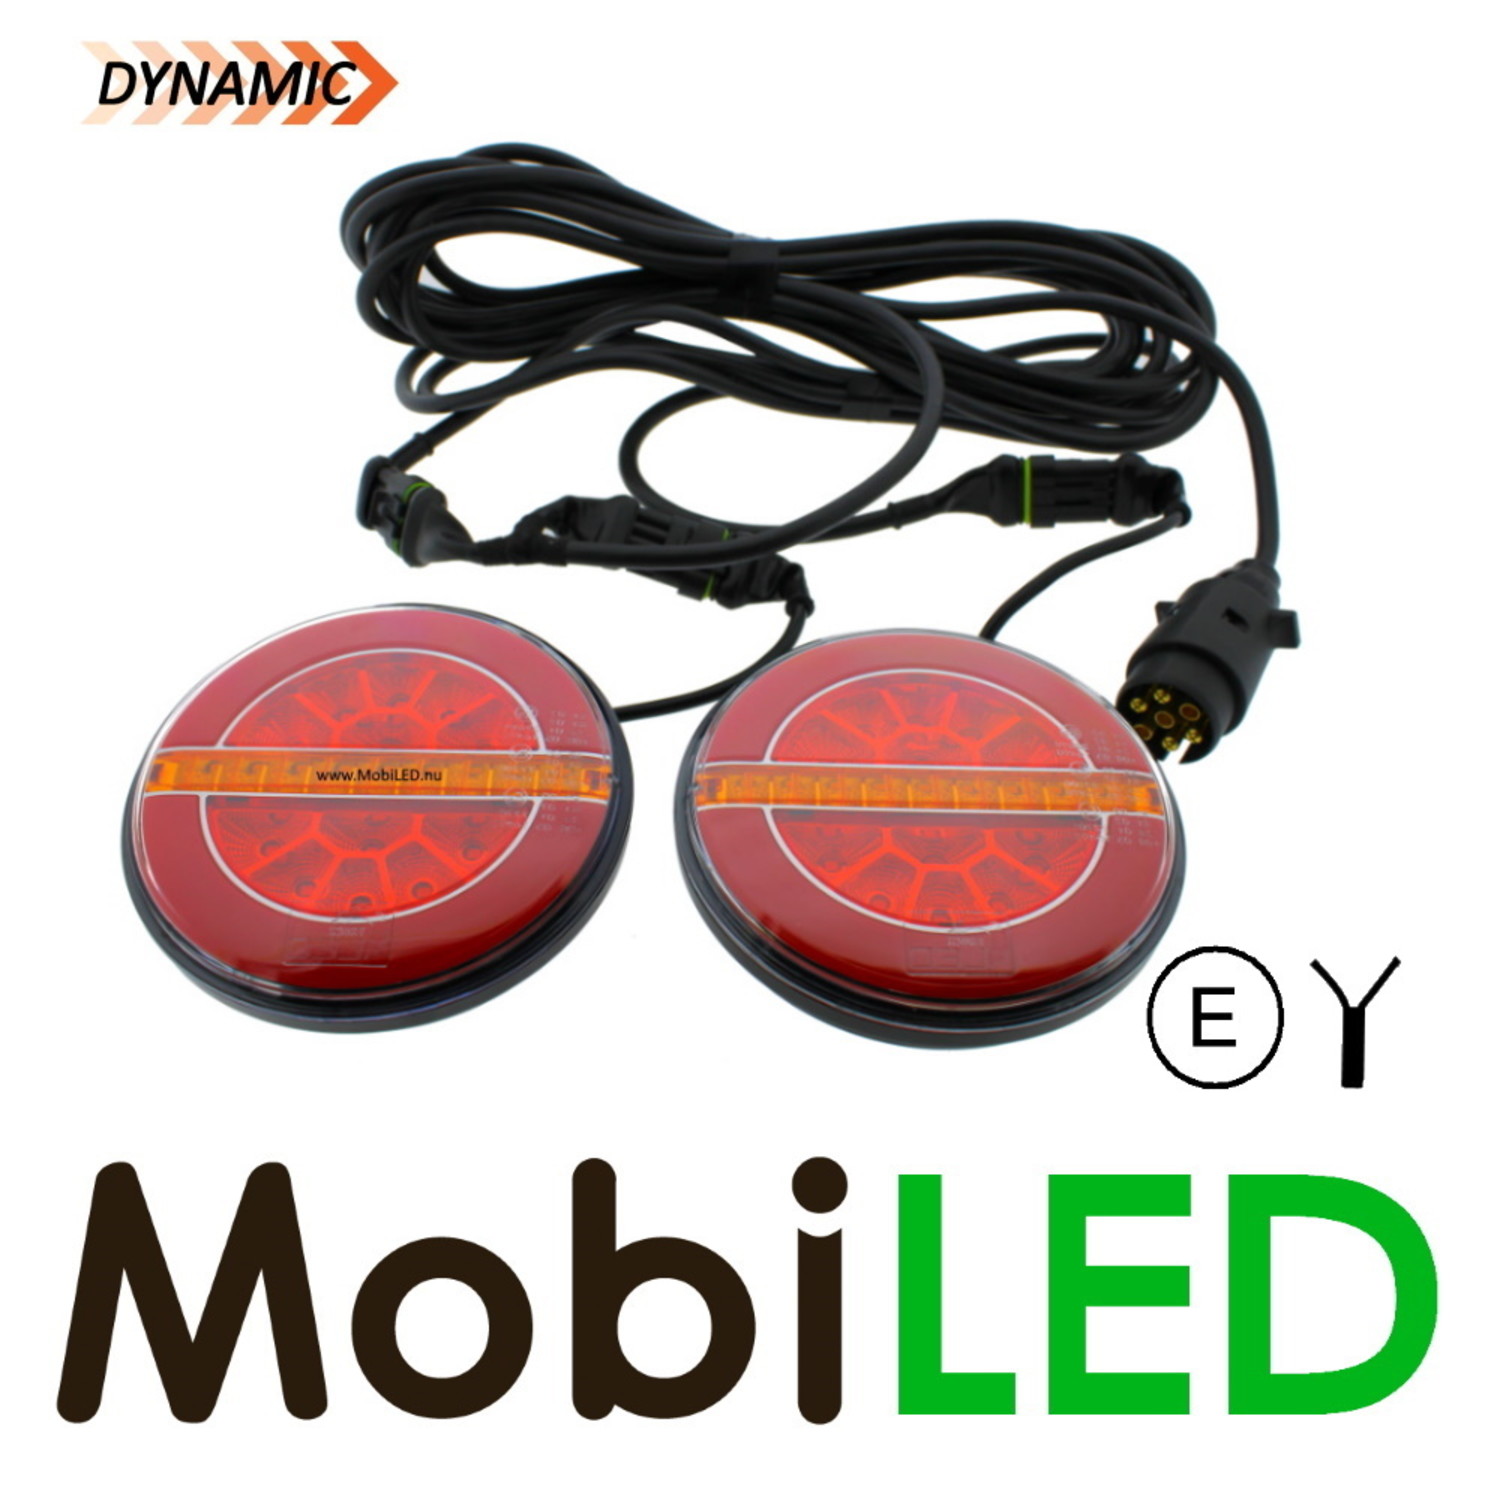 Gebruikelijk voorzetsel Gezondheid MobiLED | Set dynamische ronde achterlichten met bekabeling en magneet -  MobiLED